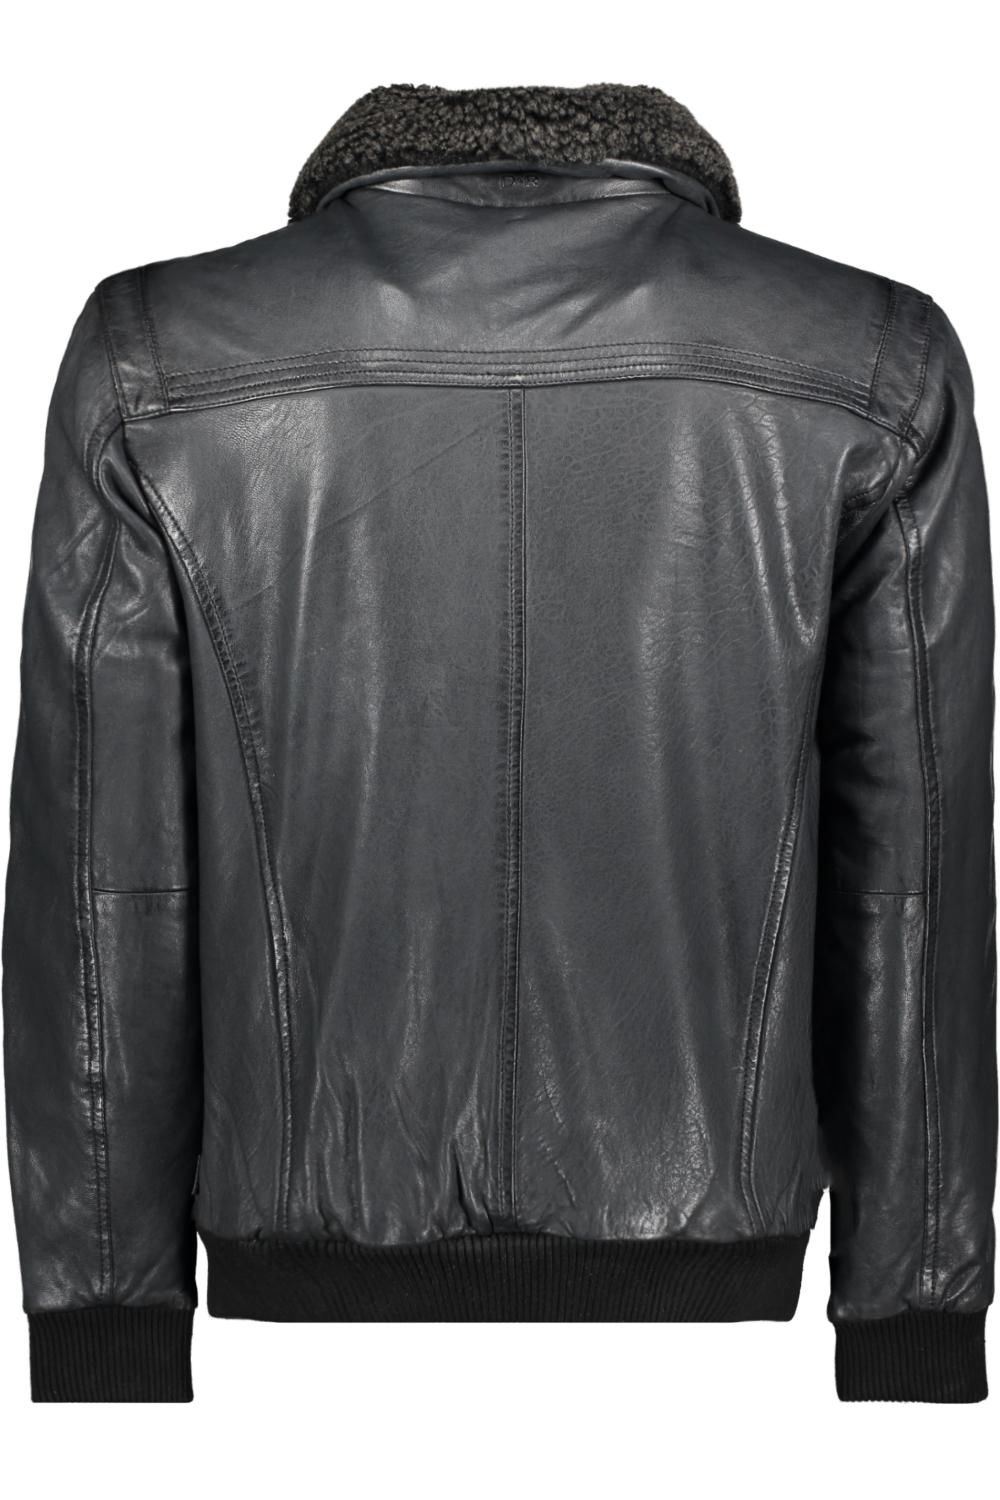 Bij wet Vestiging Gedrag leather jacket 52312 donders leren jas 980 anthracite